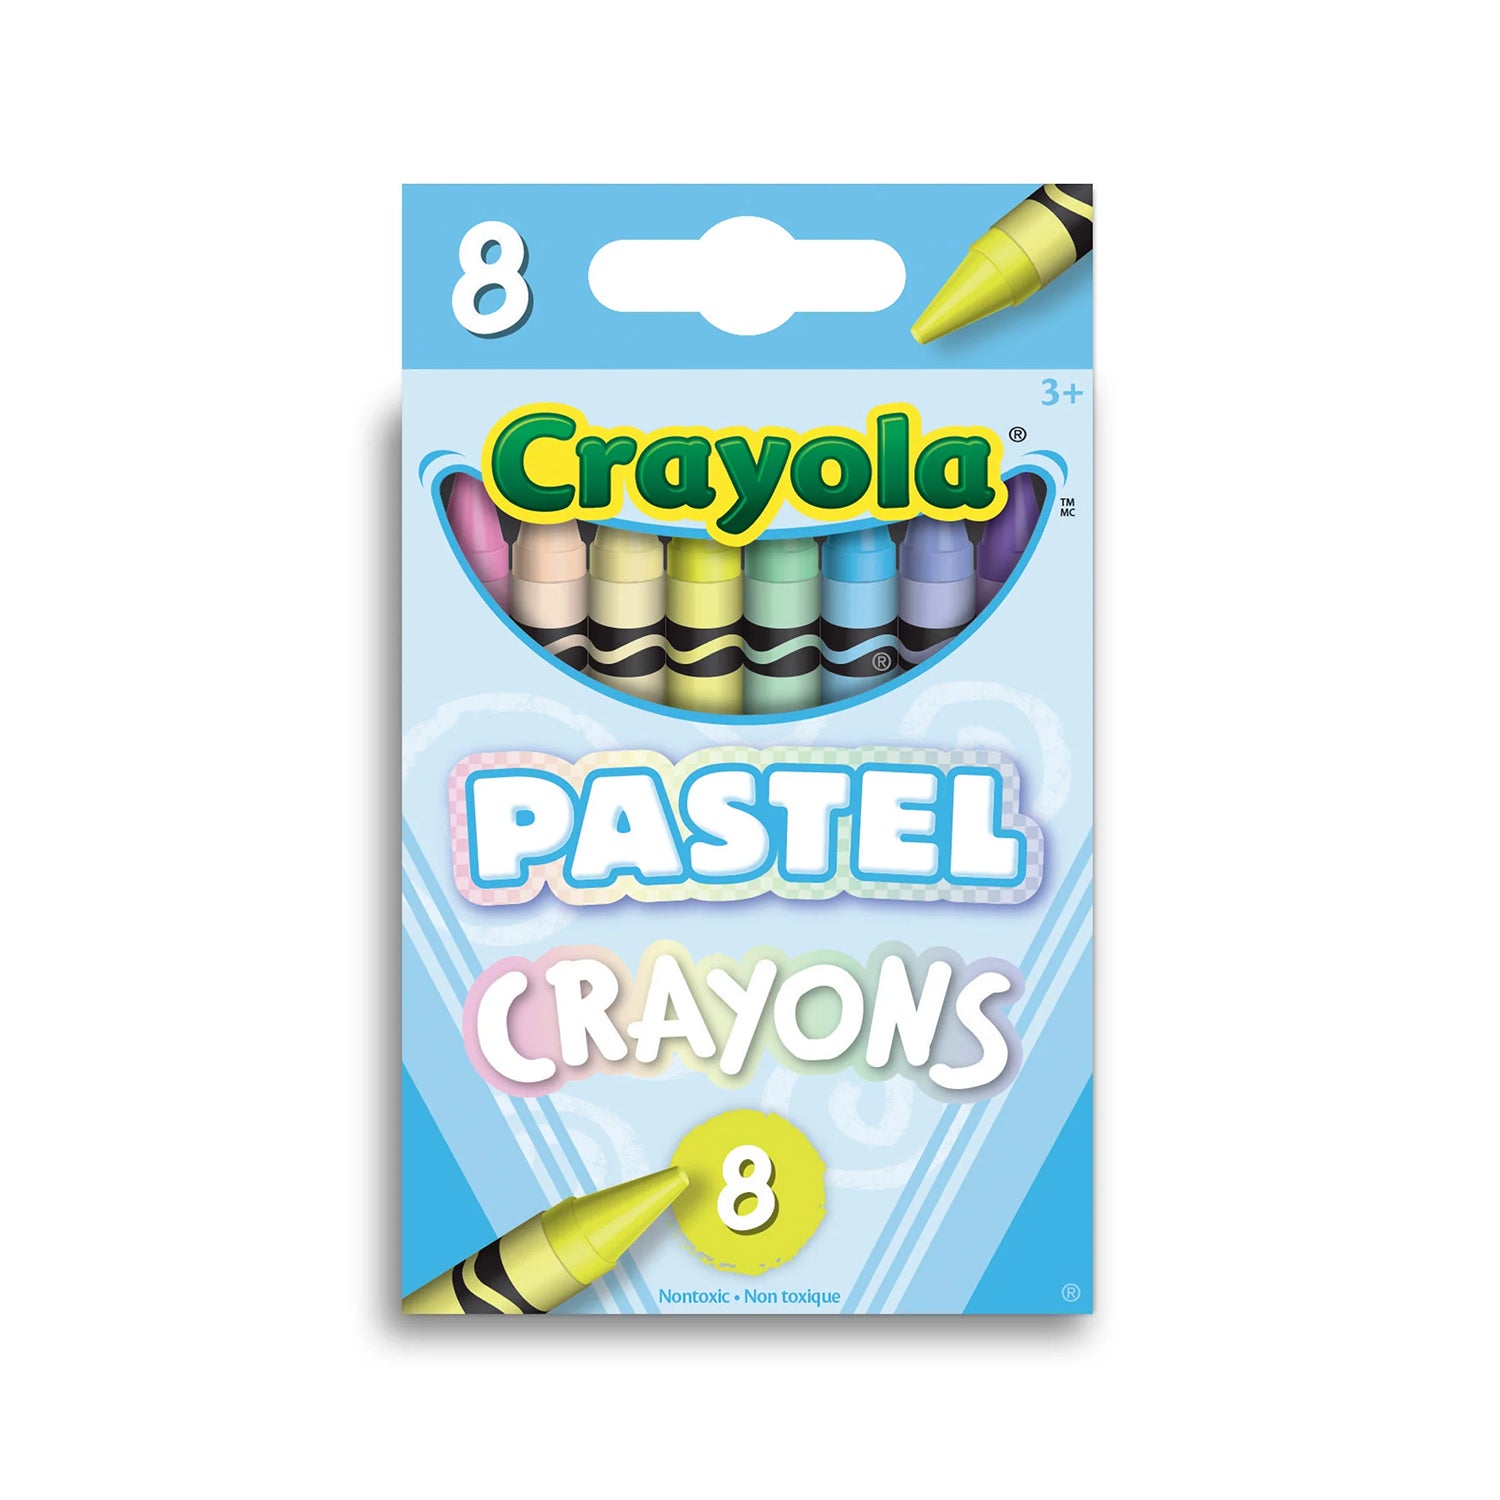 Crayola Pastel Crayons - 8 Count